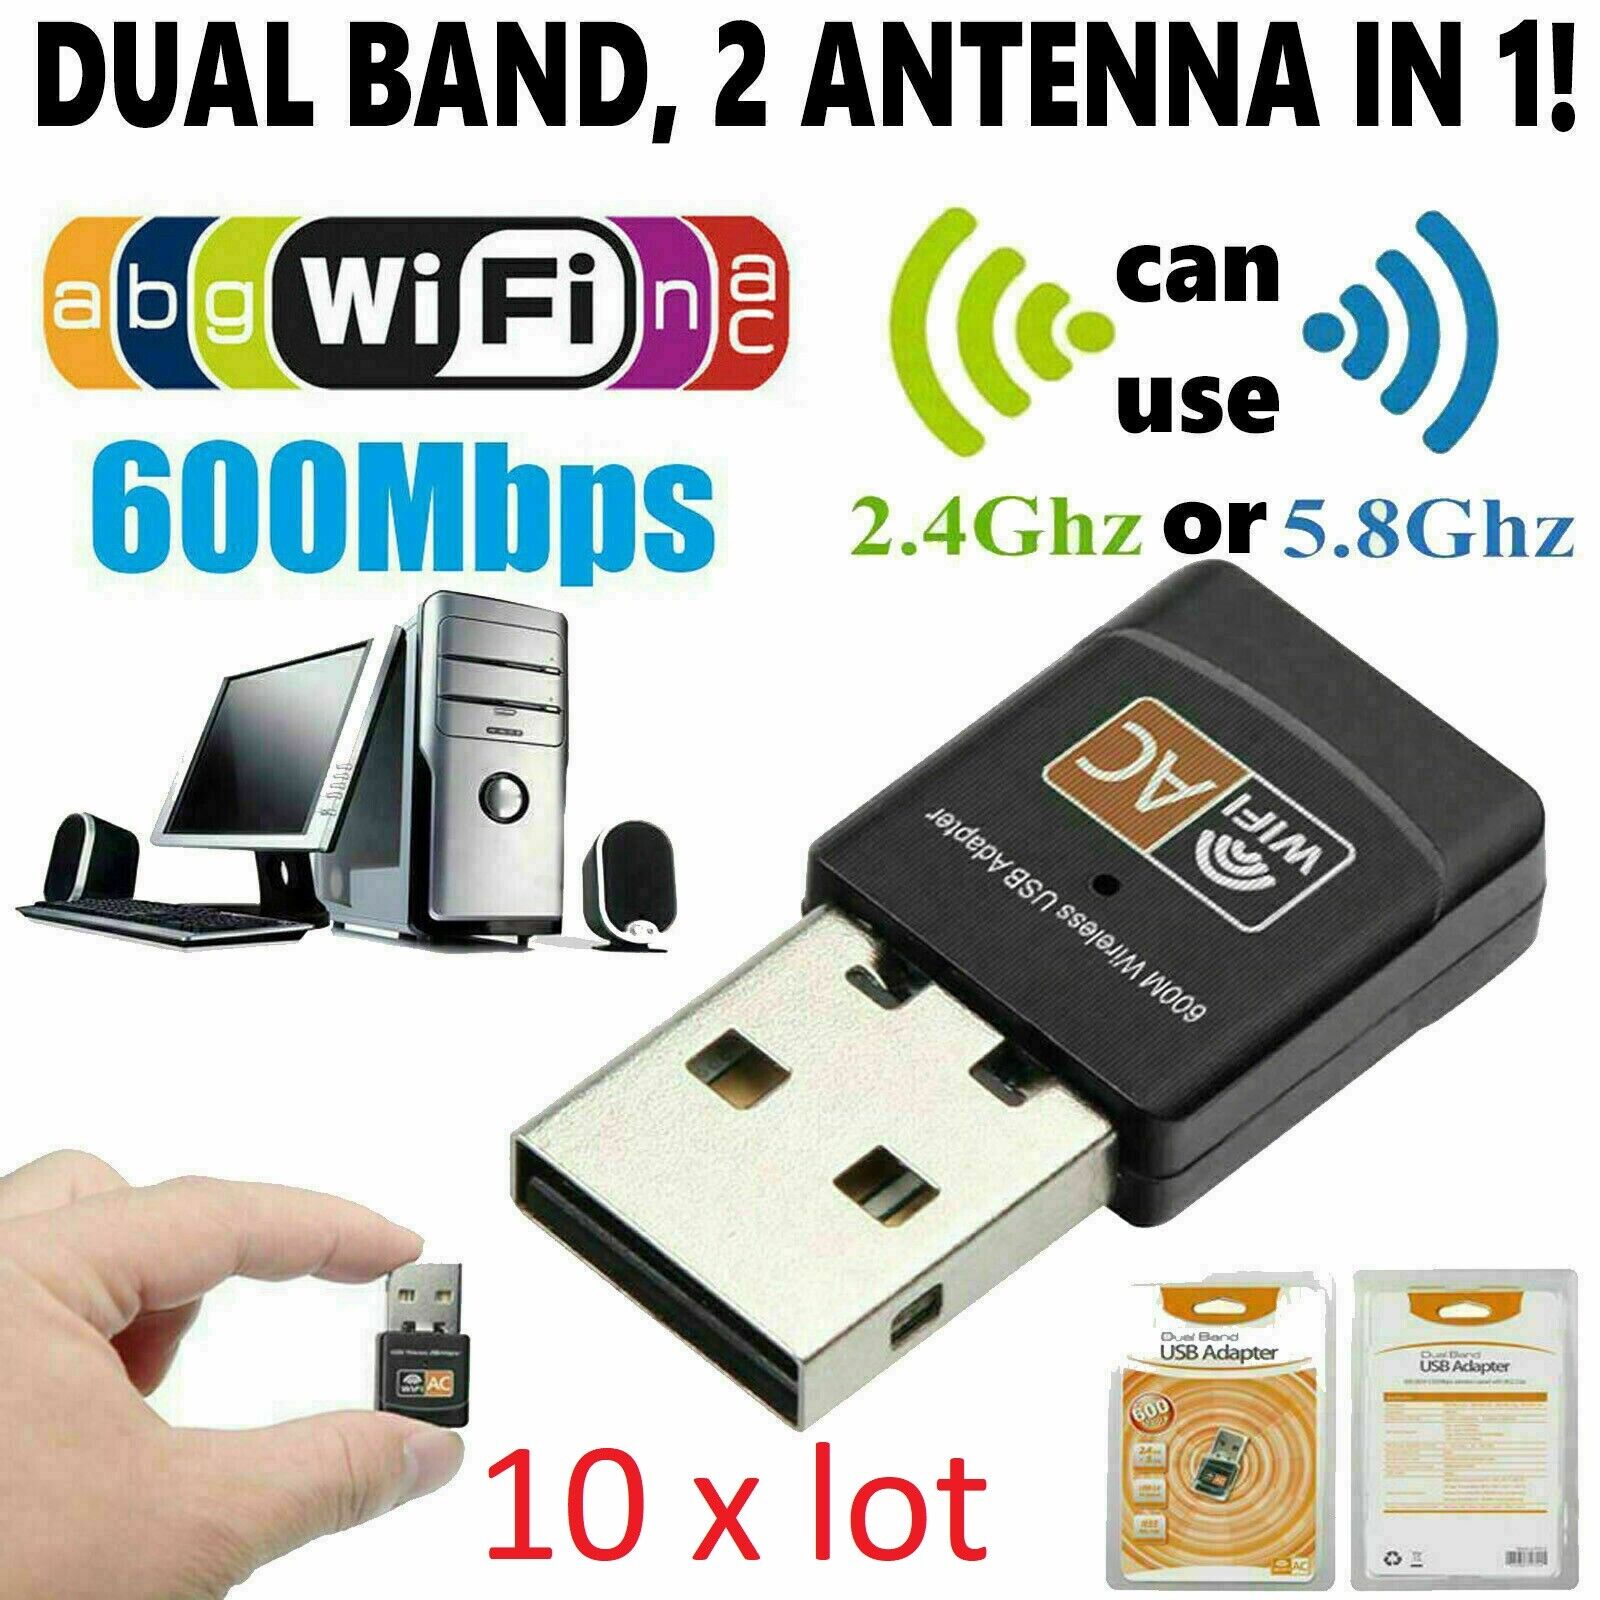 10 X LOT AC600 Mbps Dual Band 2.4/5Ghz Wireless USB Mini WiFi Network 802.11